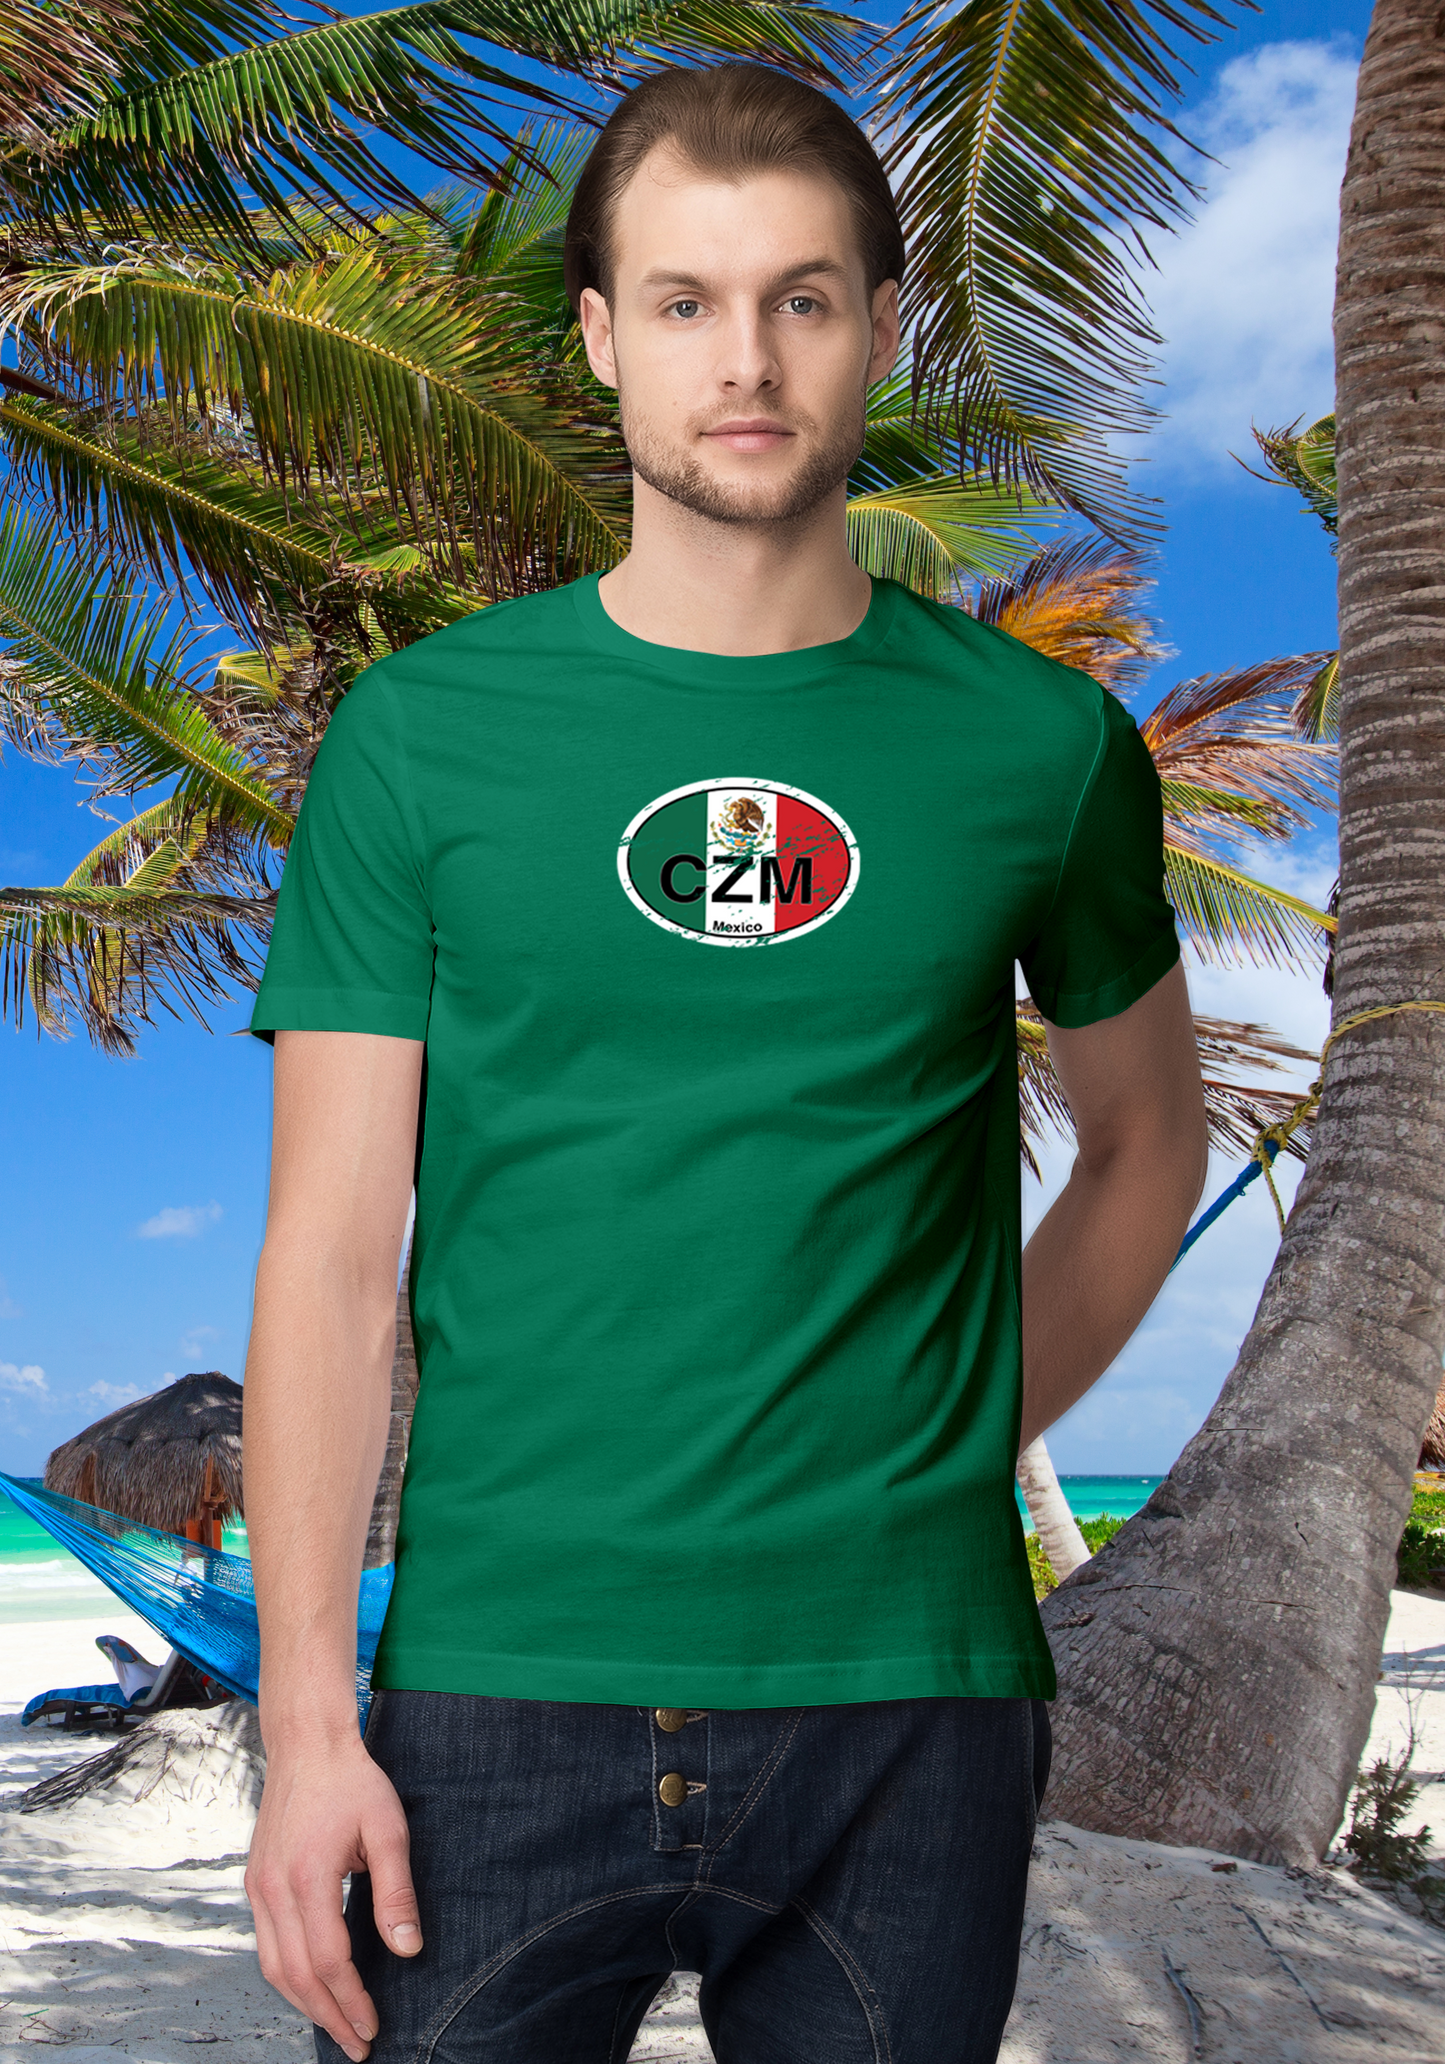 Cozumel Men's Flag T-Shirt Souvenirs - My Destination Location